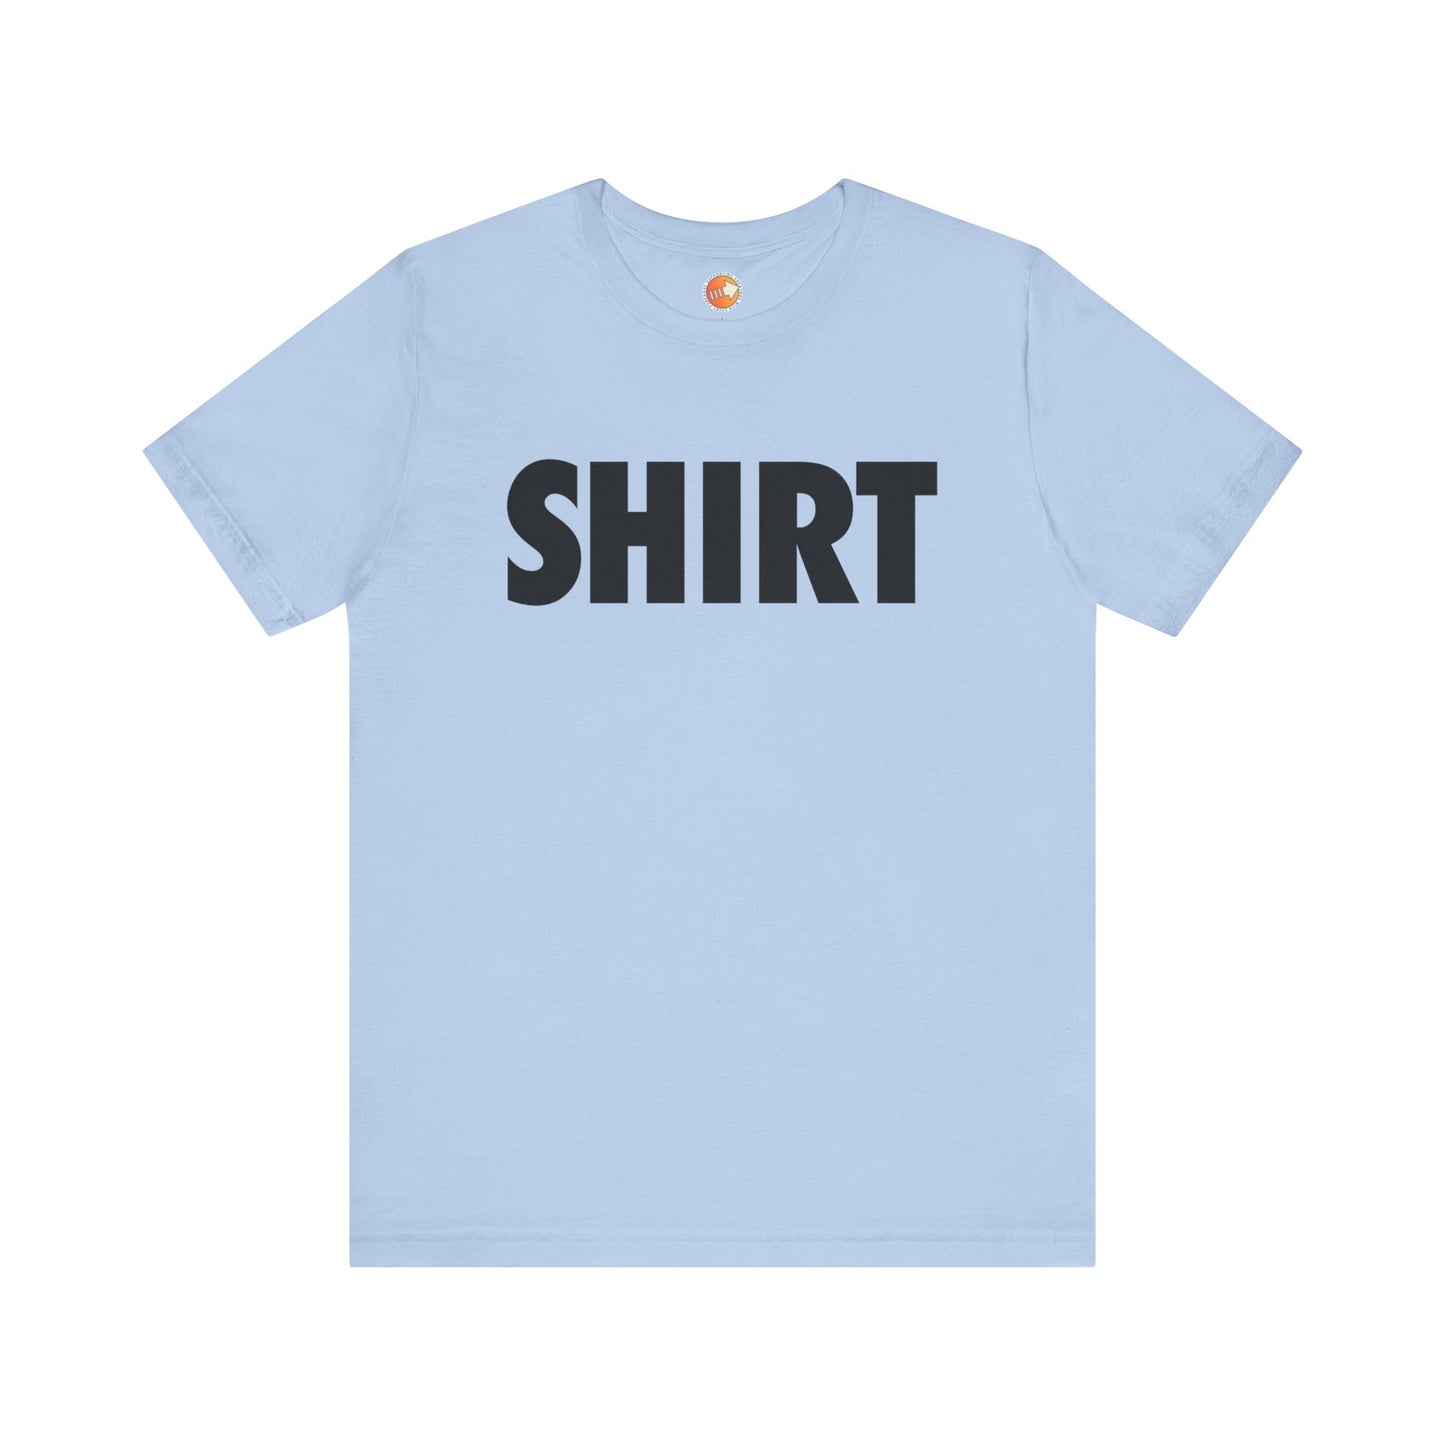 SHIRT Shirt (black text) - Unisex Jersey Short Sleeve Tee - The Gamers